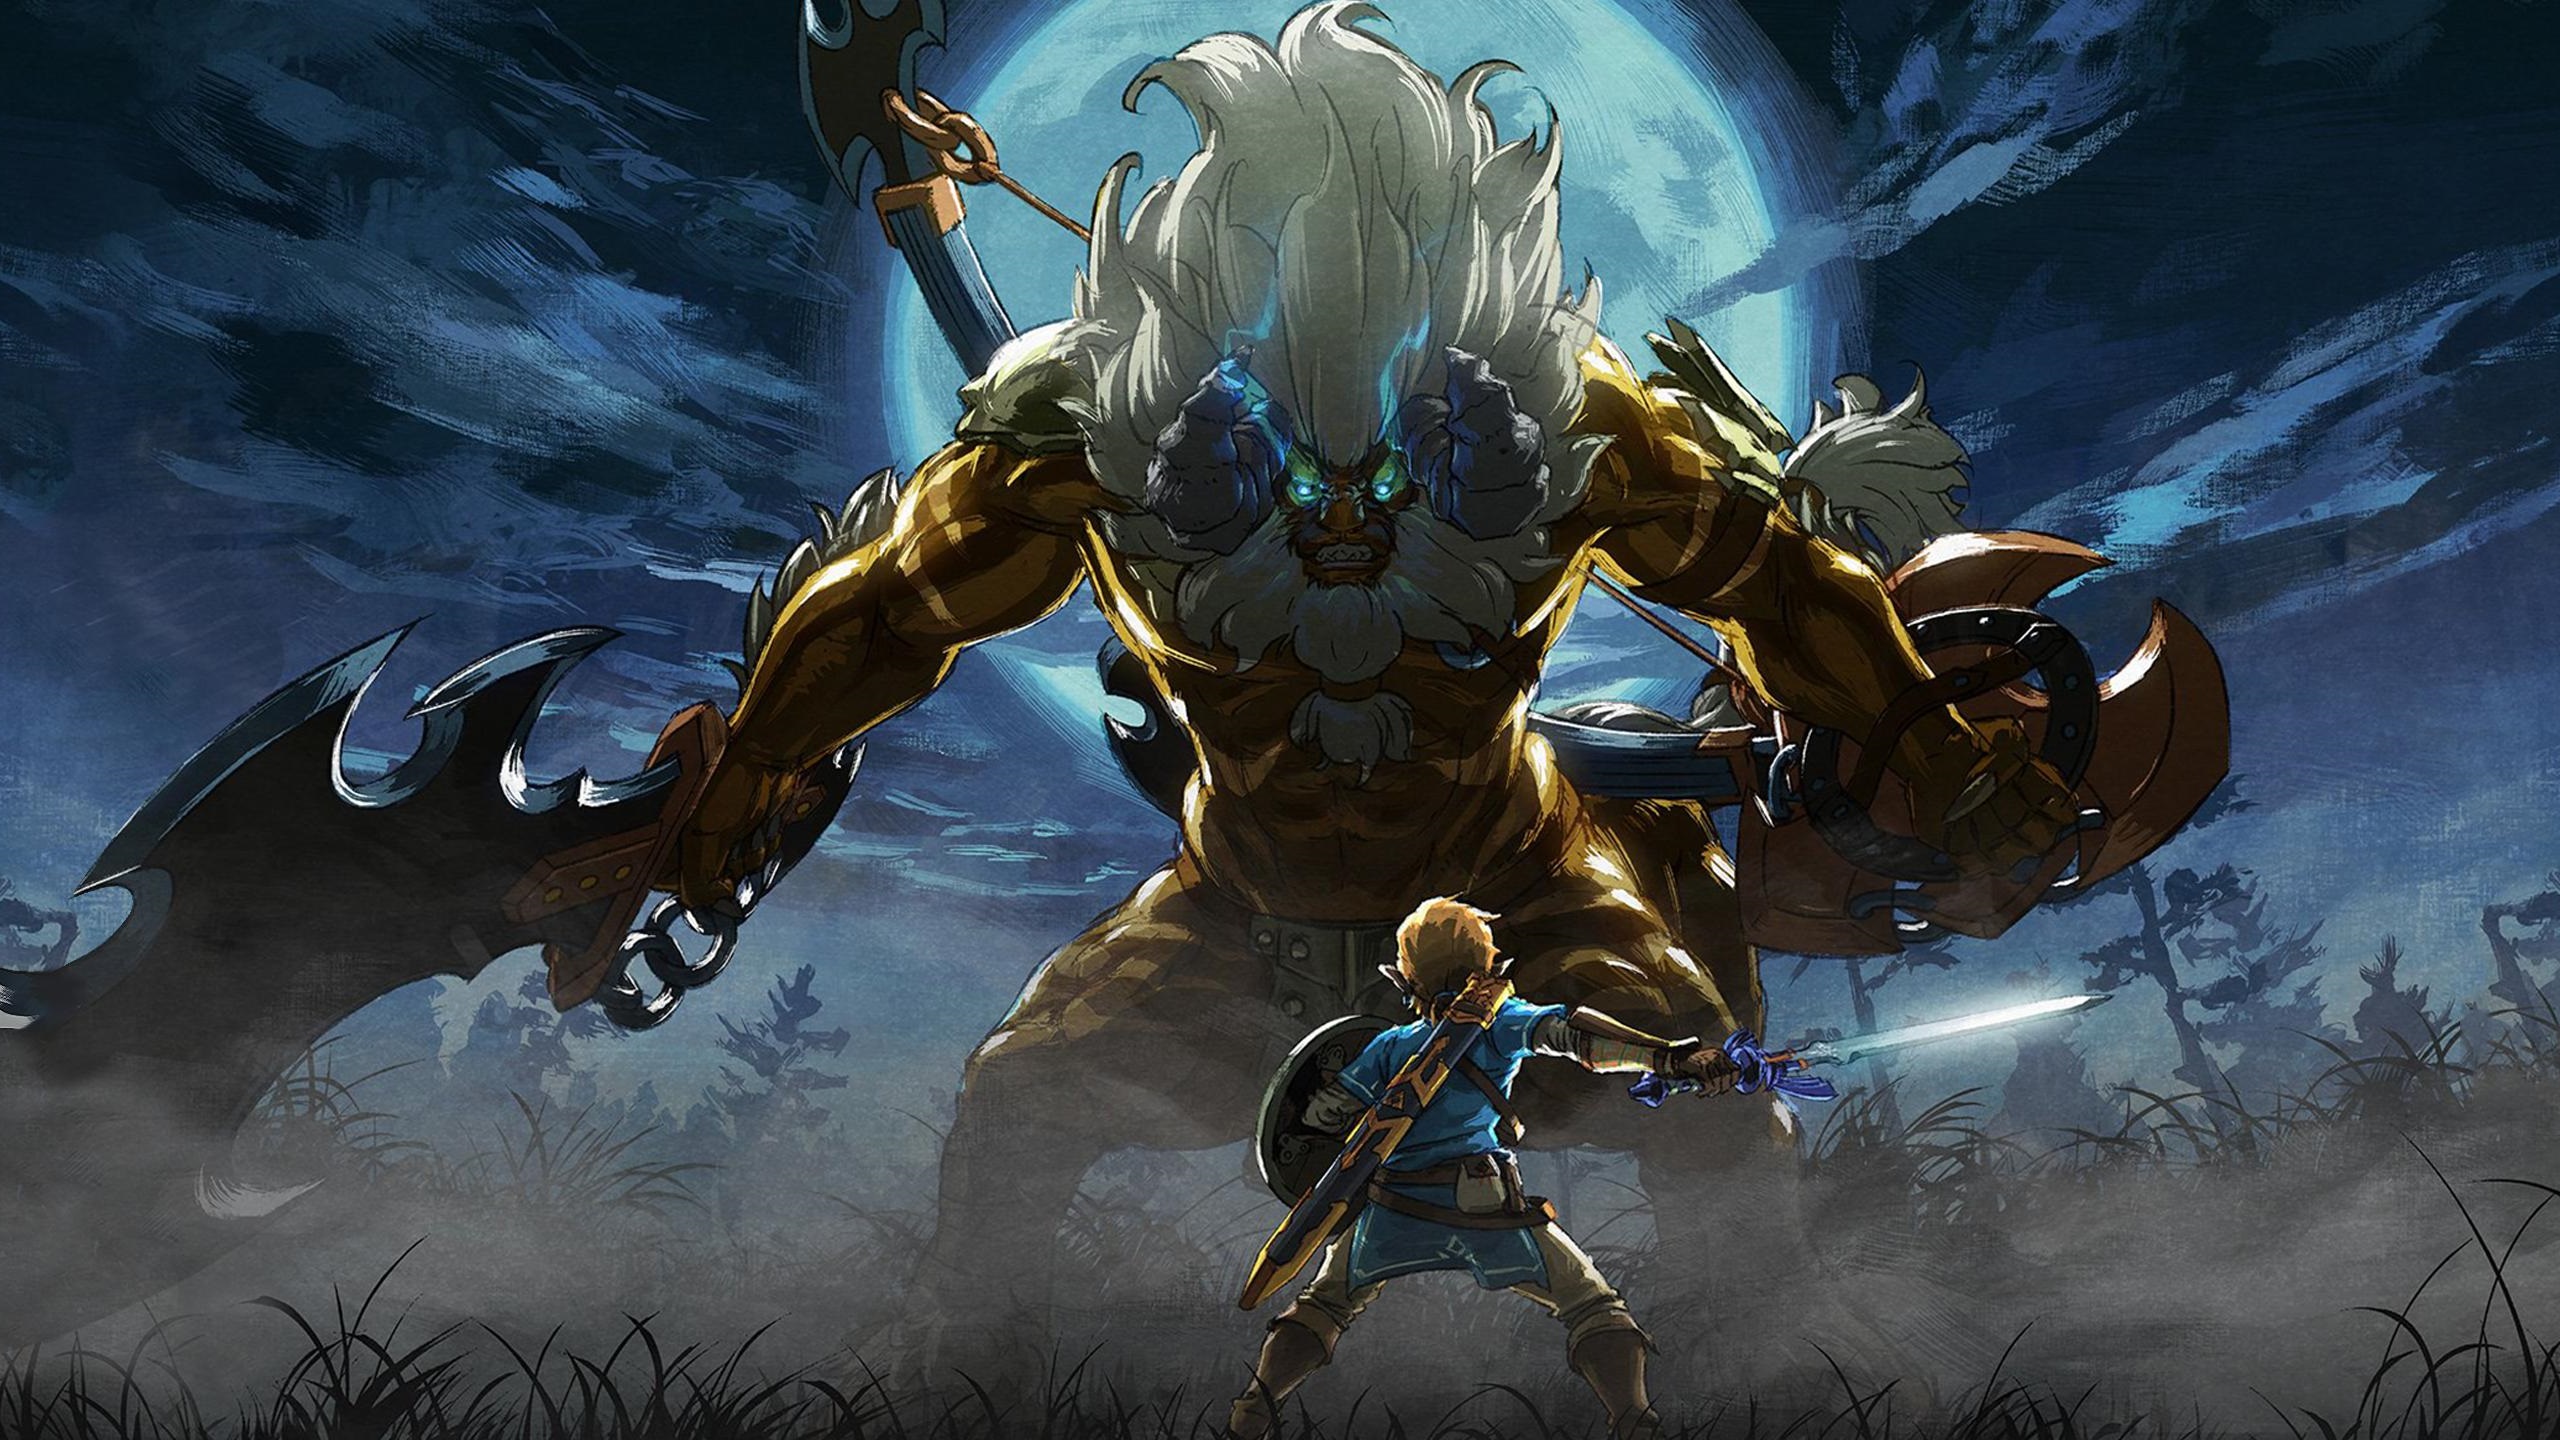 Artwork The Legend Of Zelda, HD Games, 4k Wallpapers, Images